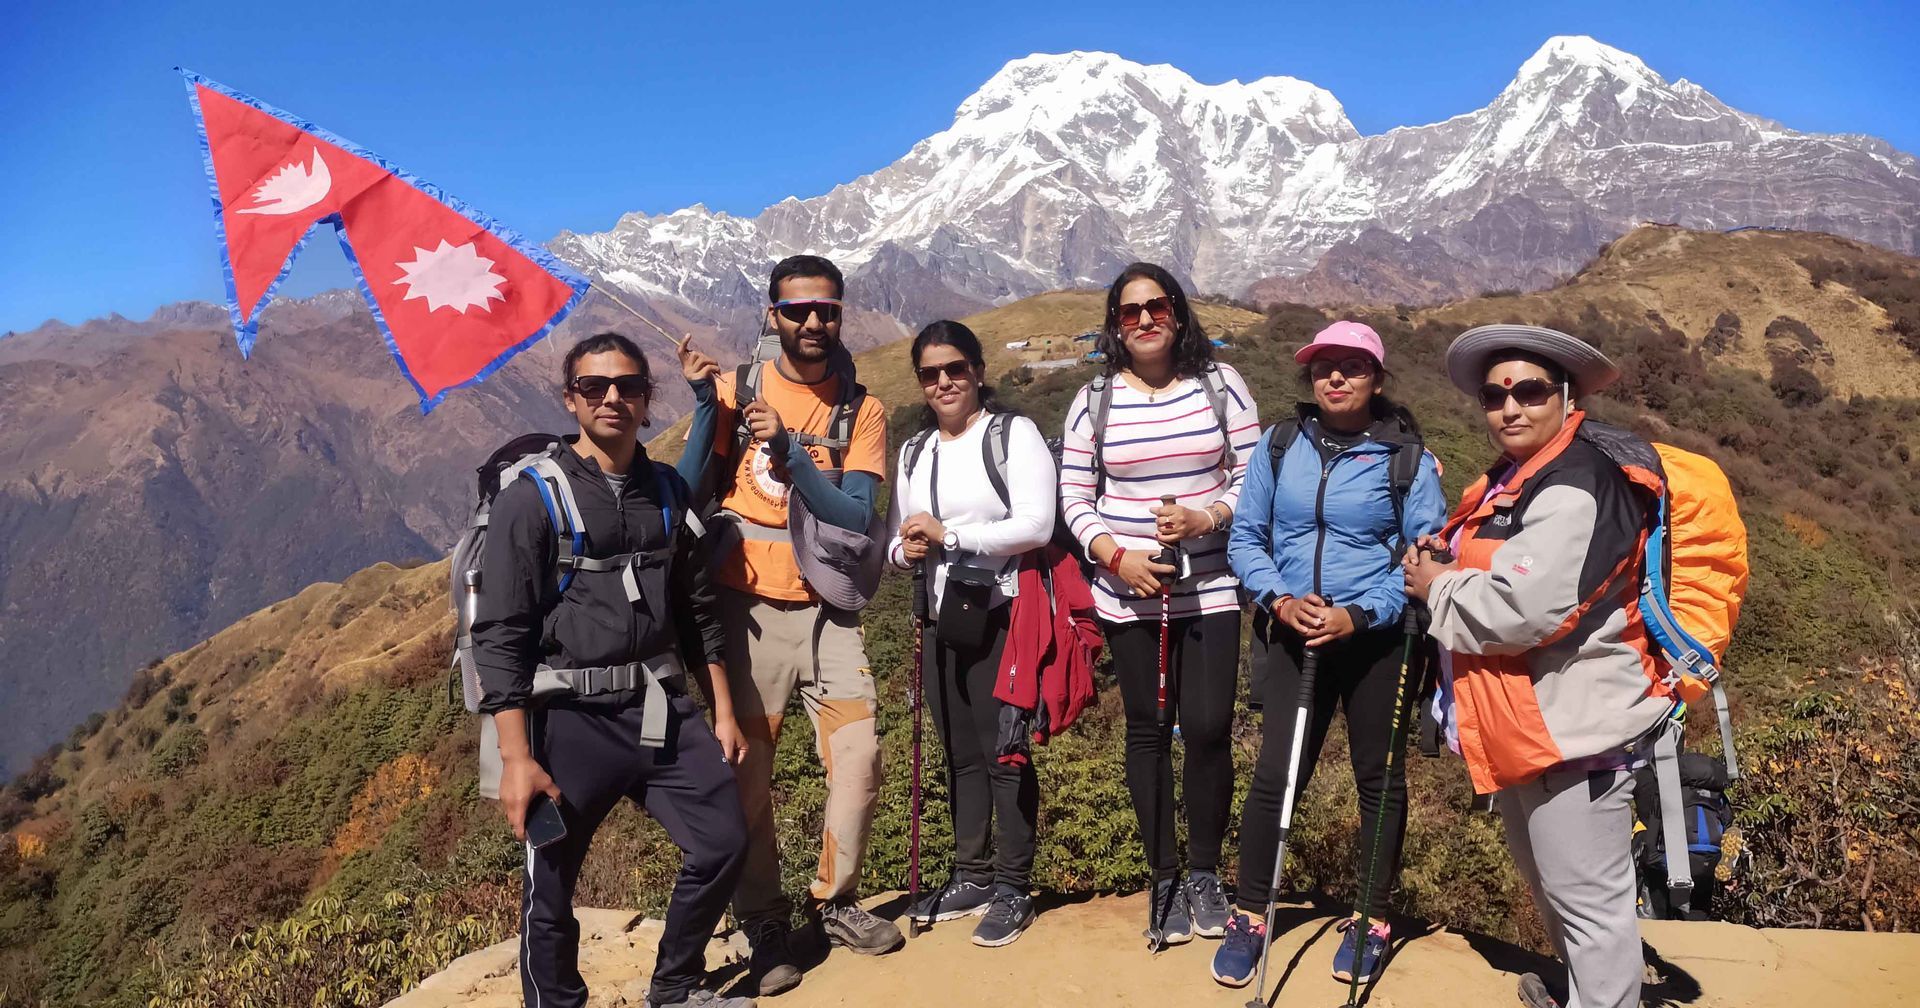 Group of trekkers in Nepal